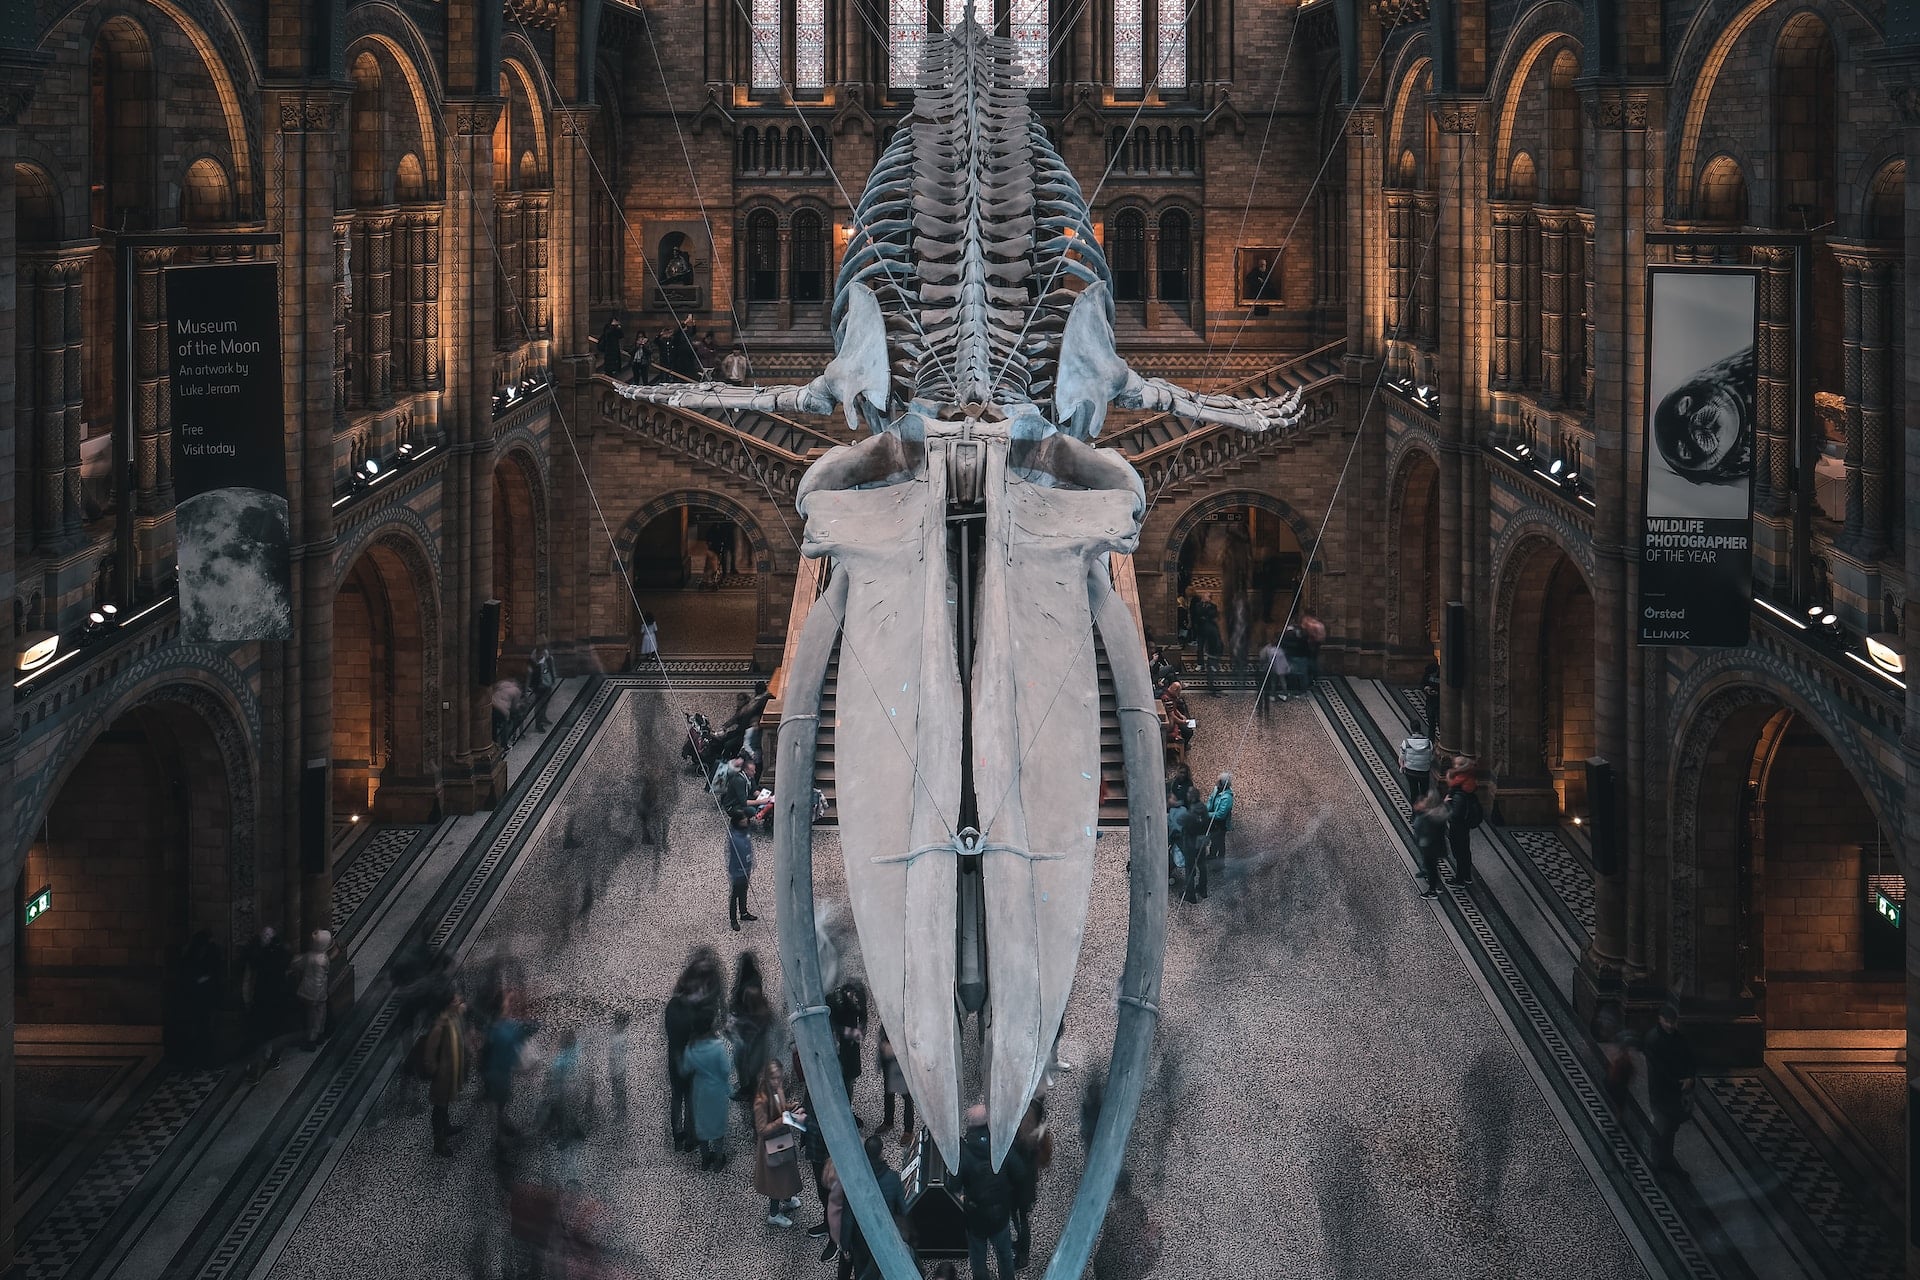 Squelette d'une baleine dans un musée